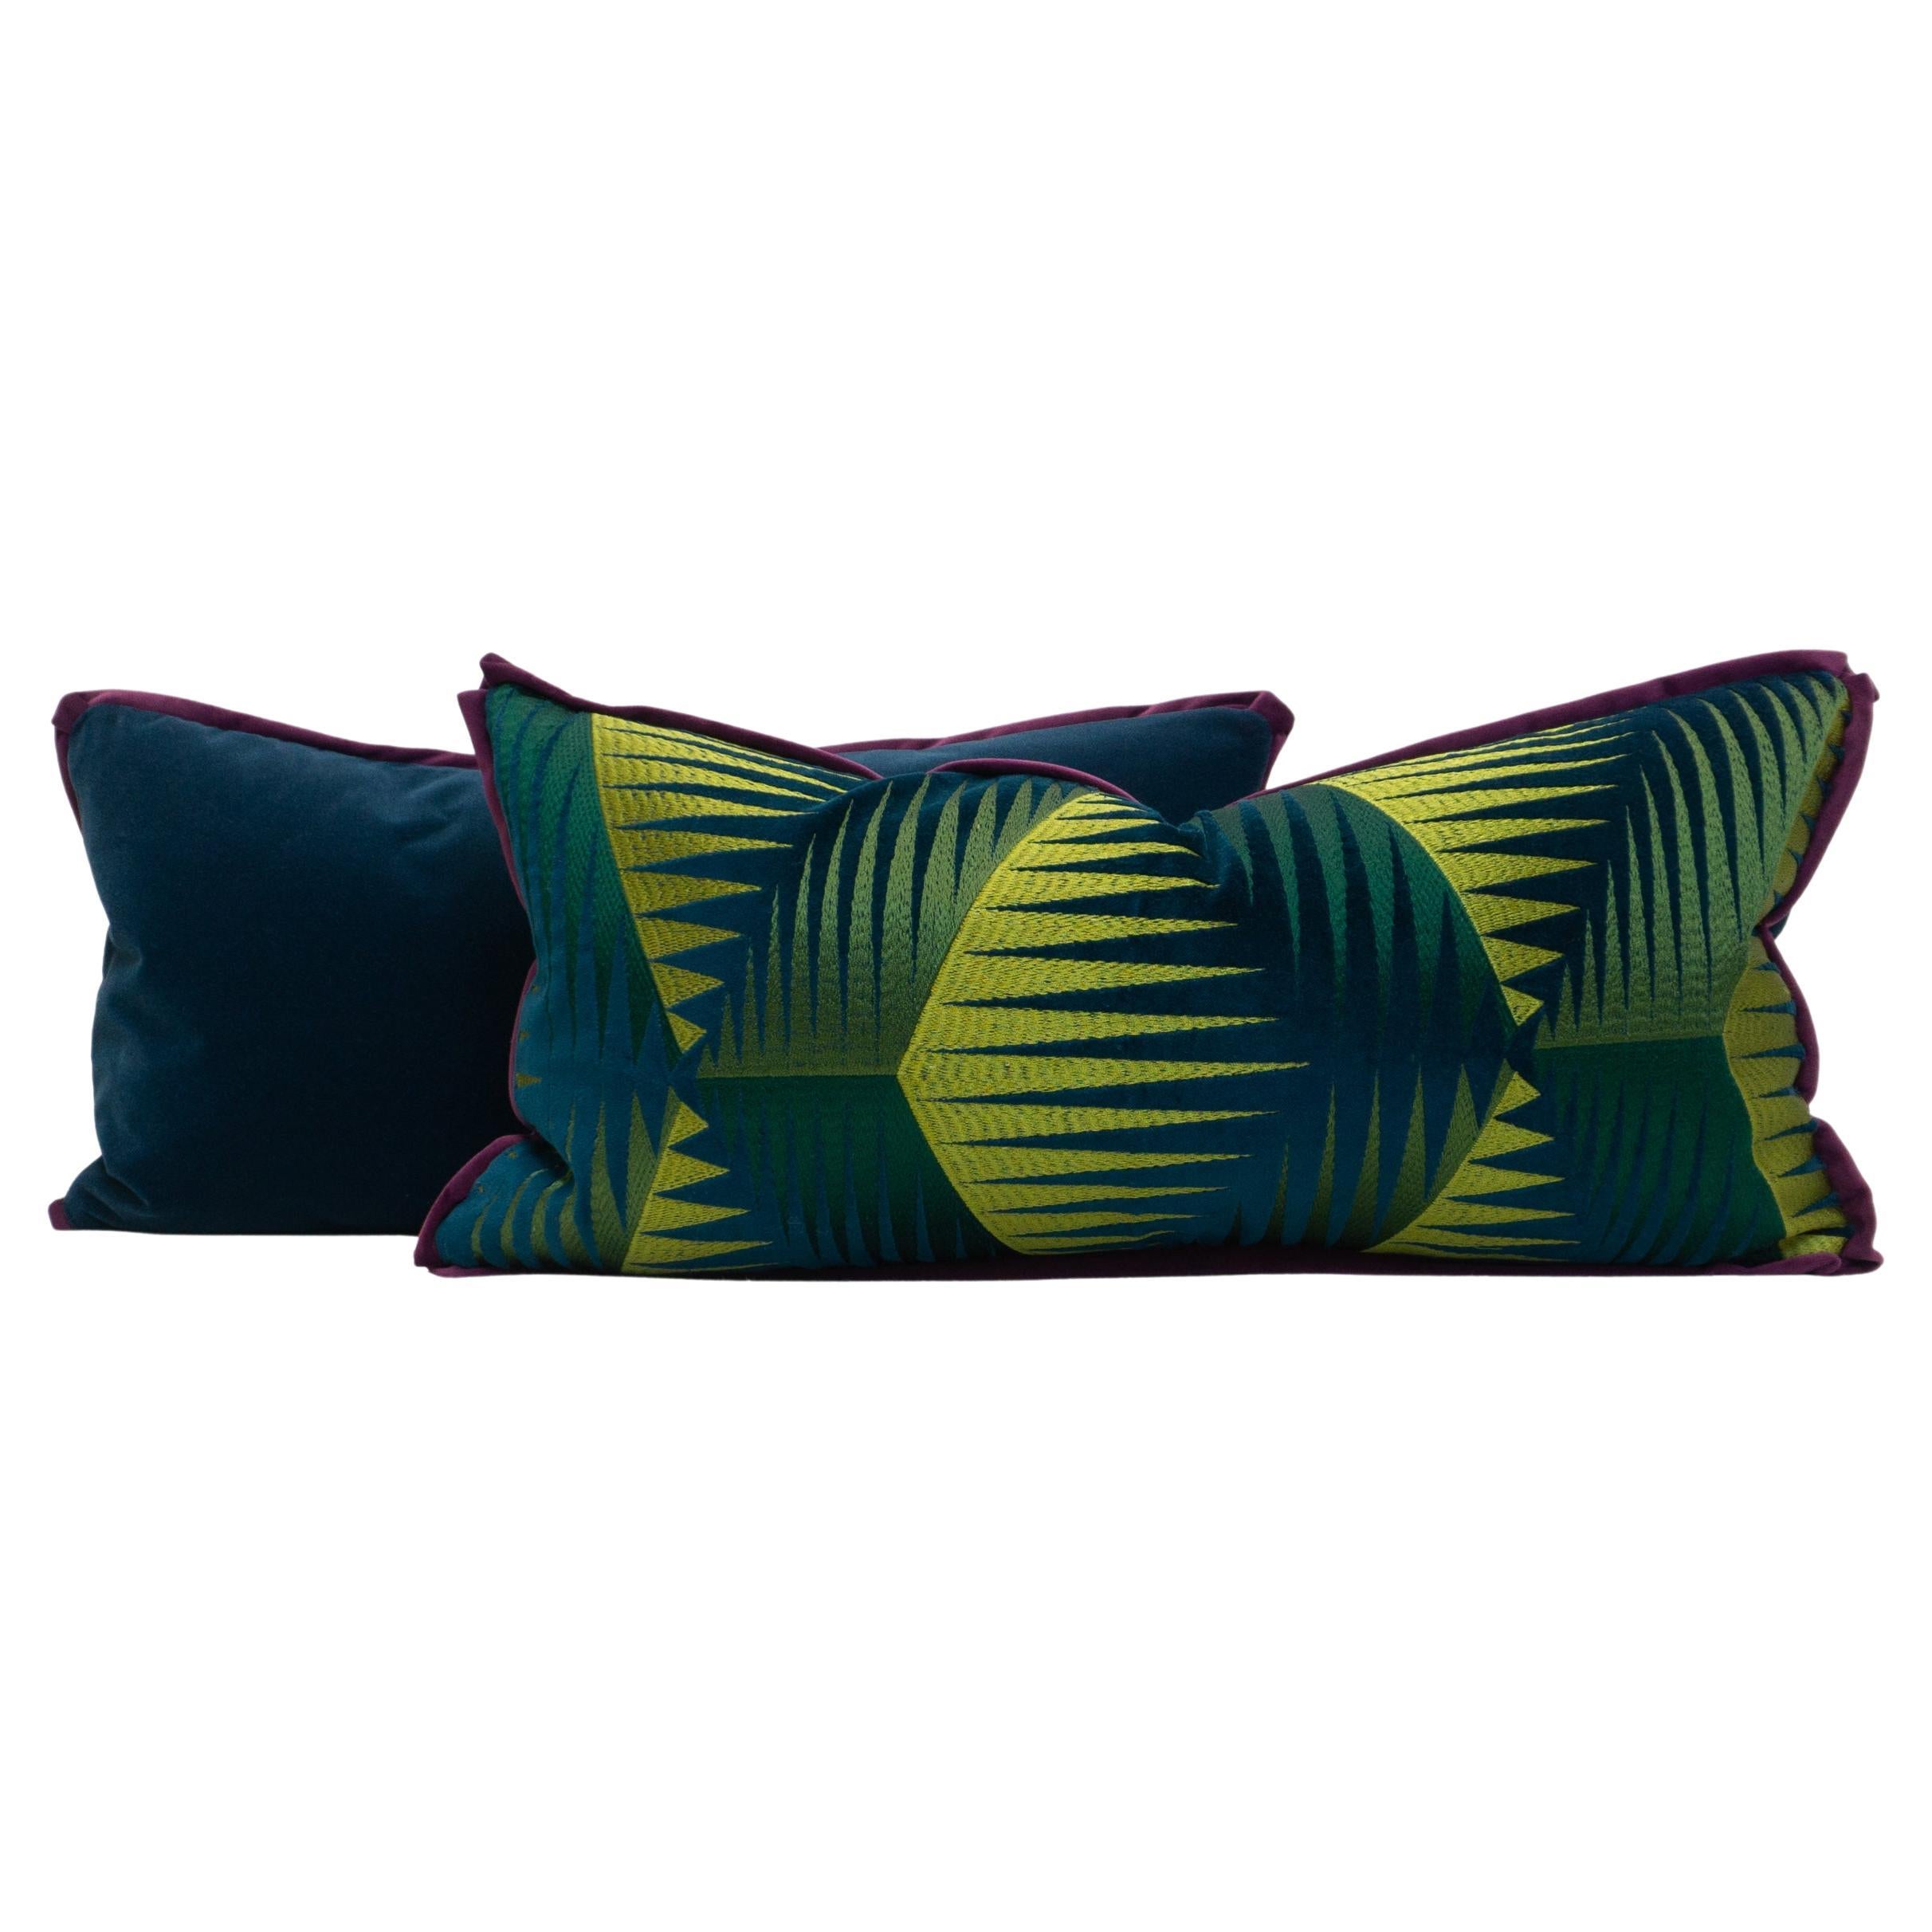 Embroidered Grass Design Blue Navy Velvet Fabric Purple Trim Lumbar Pillows